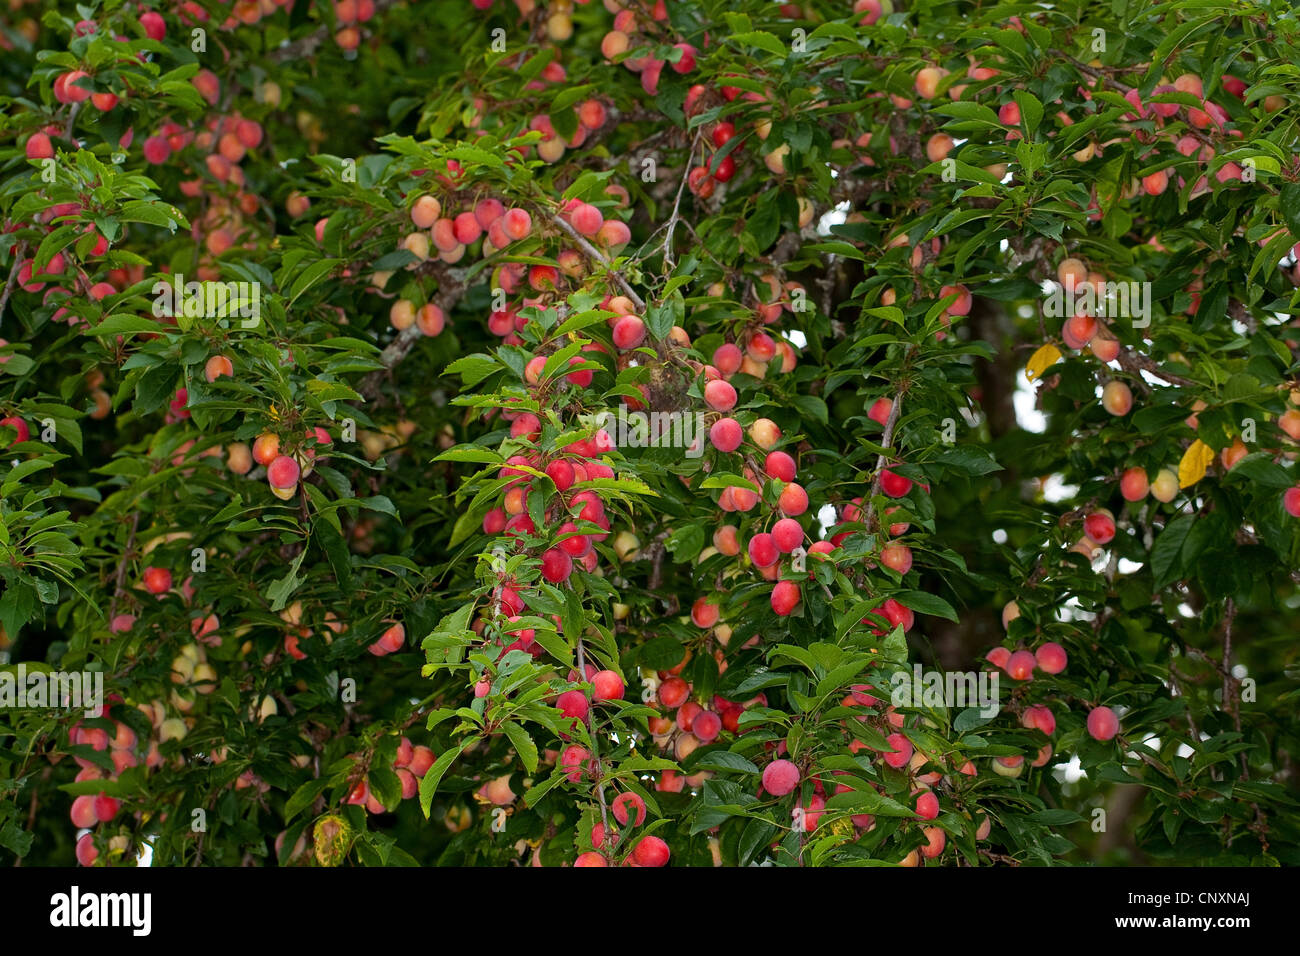 cherry plum, Myrobalan plum (Prunus cerasifera), fruiting, Germany Stock Photo